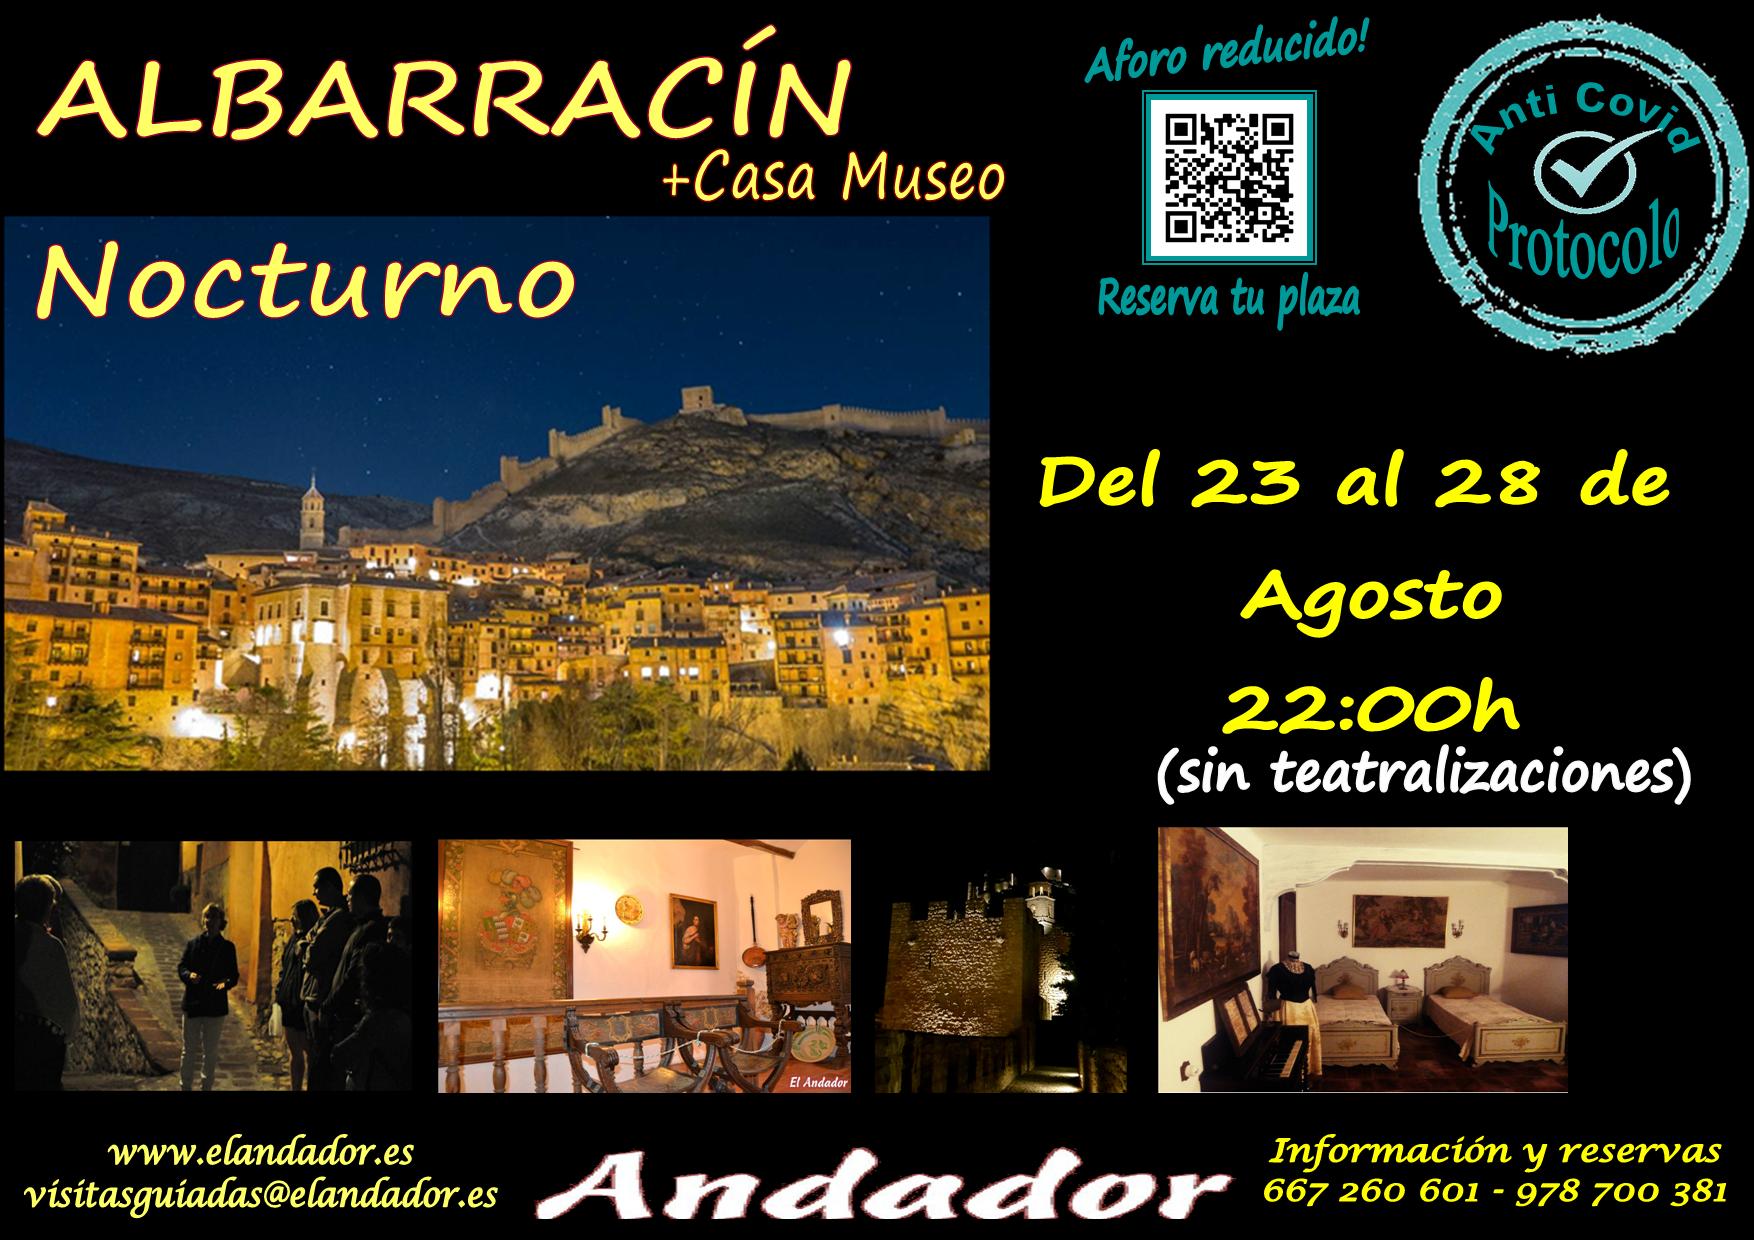 Del 23 al 28 de Agosto… Visita Guiada en Albarracín Nocturno! Reserva tu plaza!